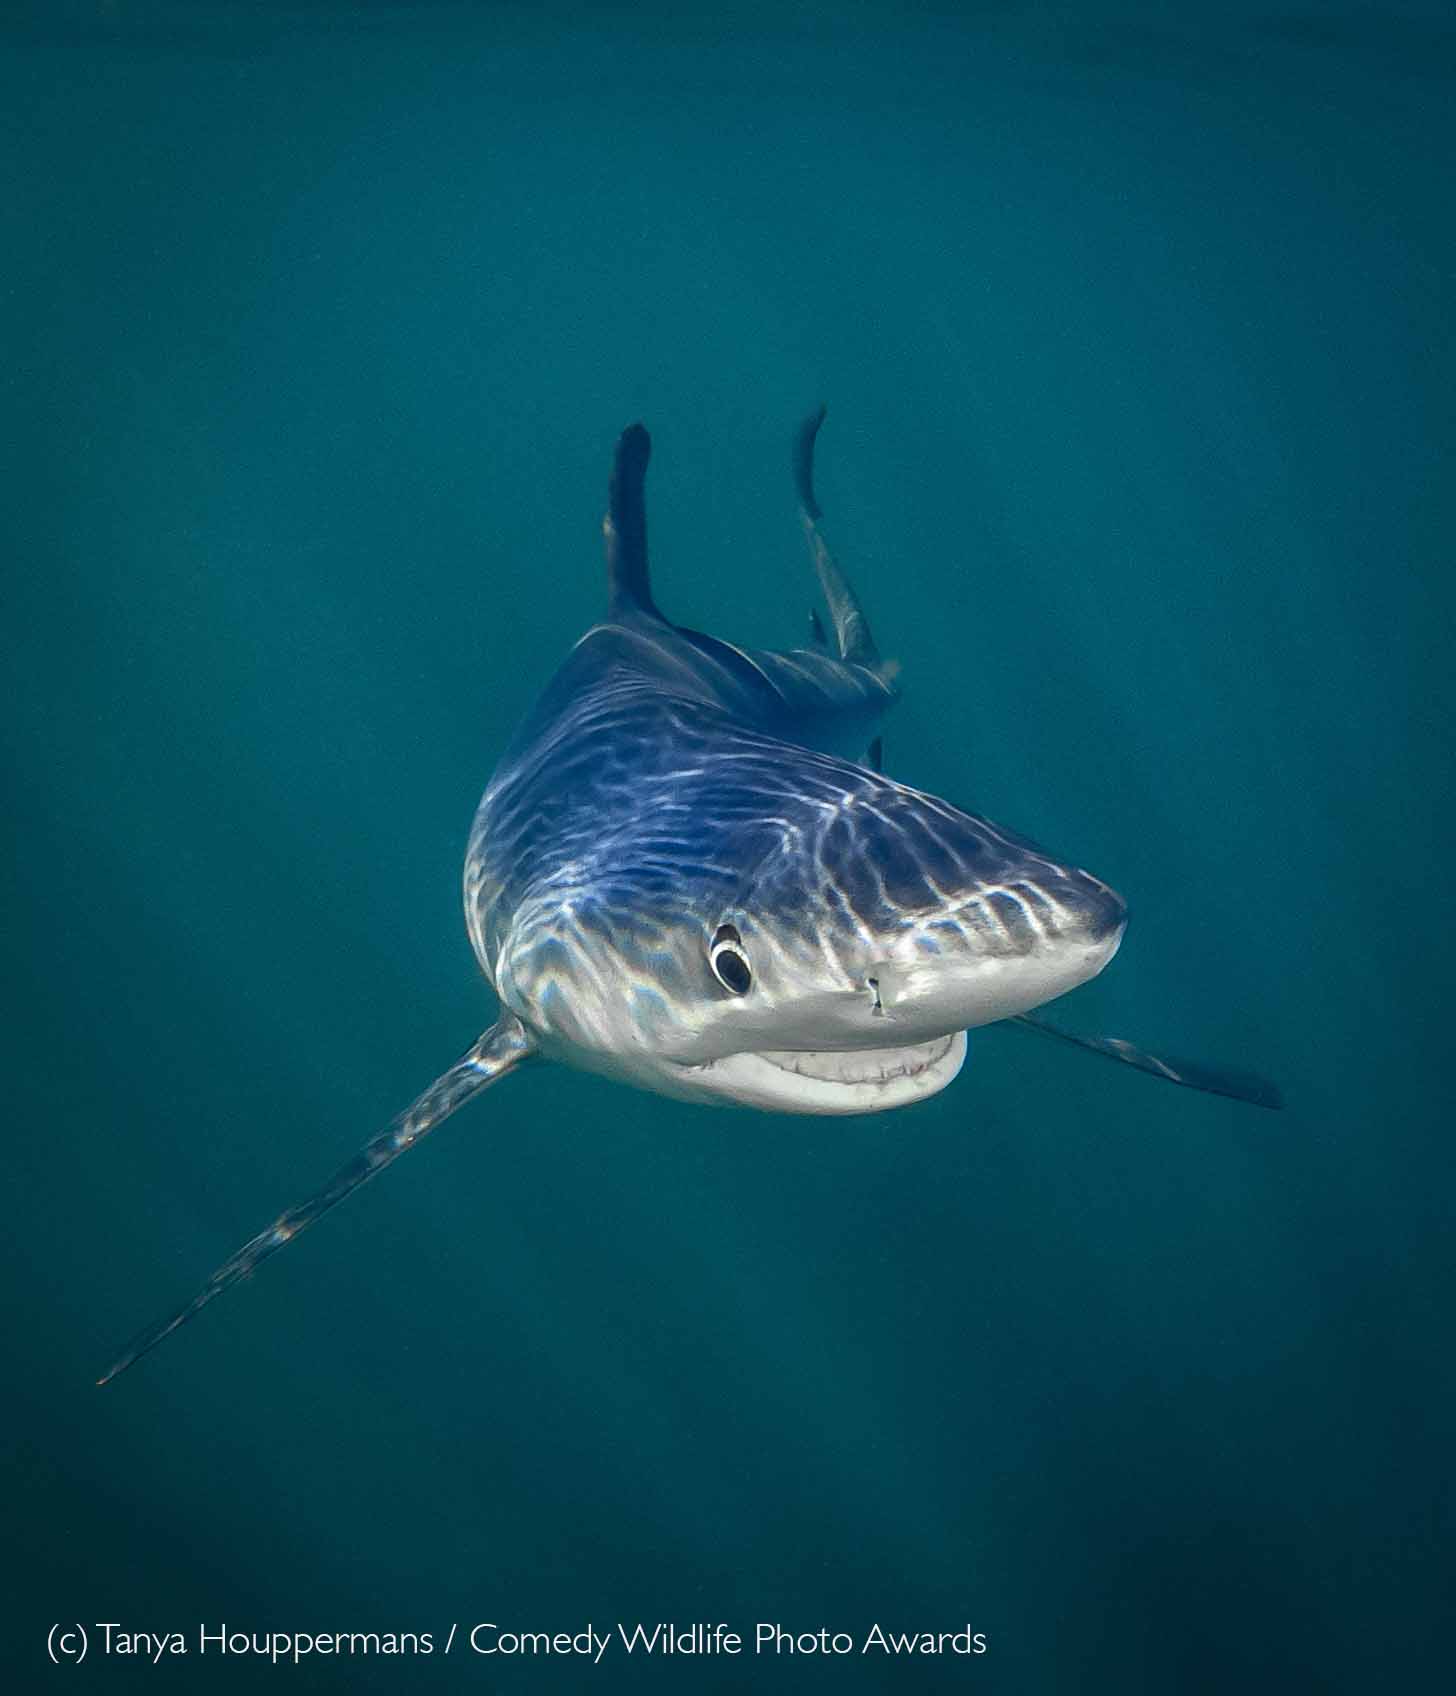 A grinning blue shark